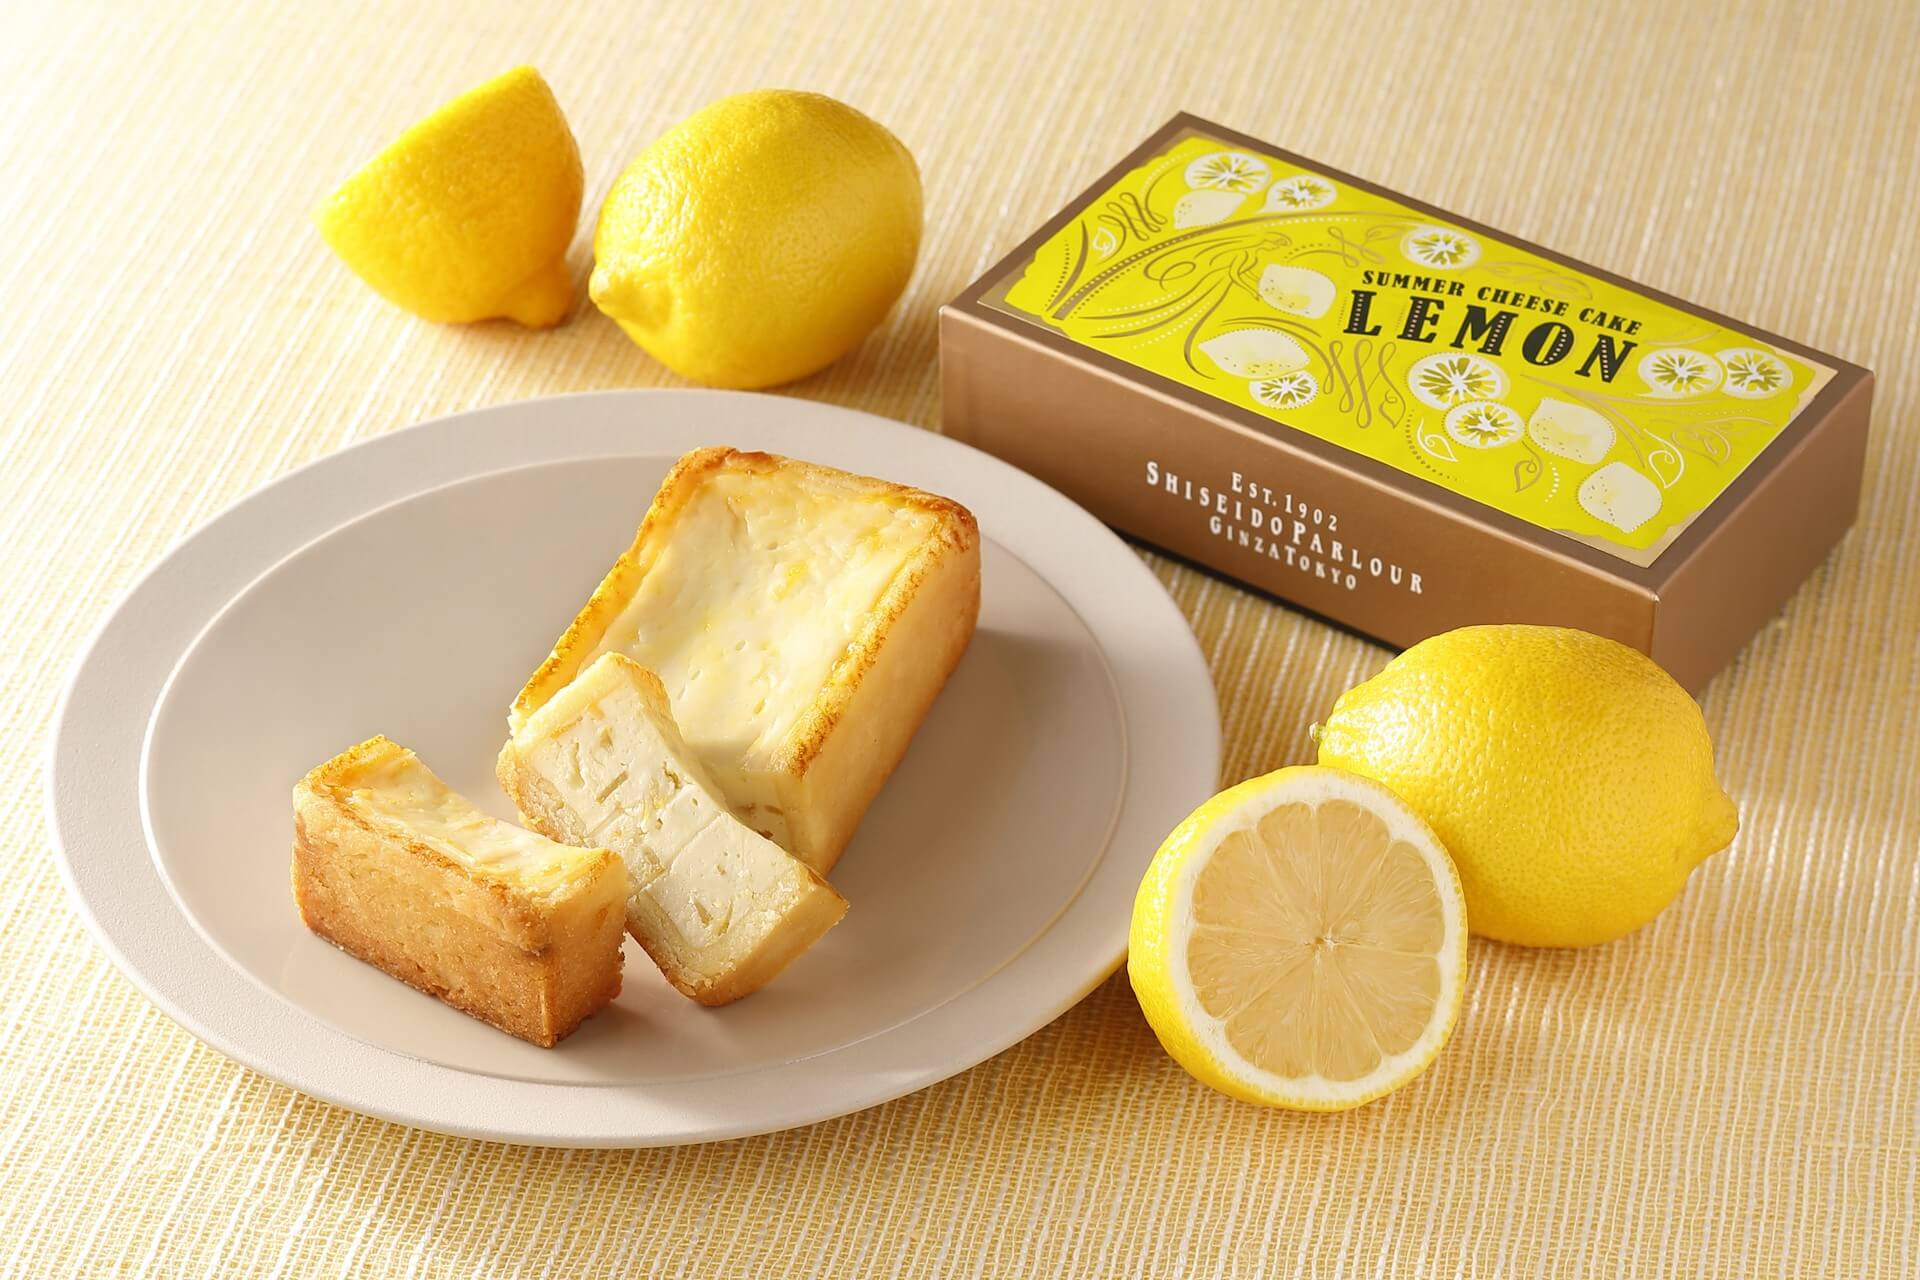 レモン×チーズケーキで夏を先取り！資生堂パーラーにて2種類の『夏のチーズケーキ（レモン）』が期間限定で登場 gourmet210406_shiseidoparlor_6